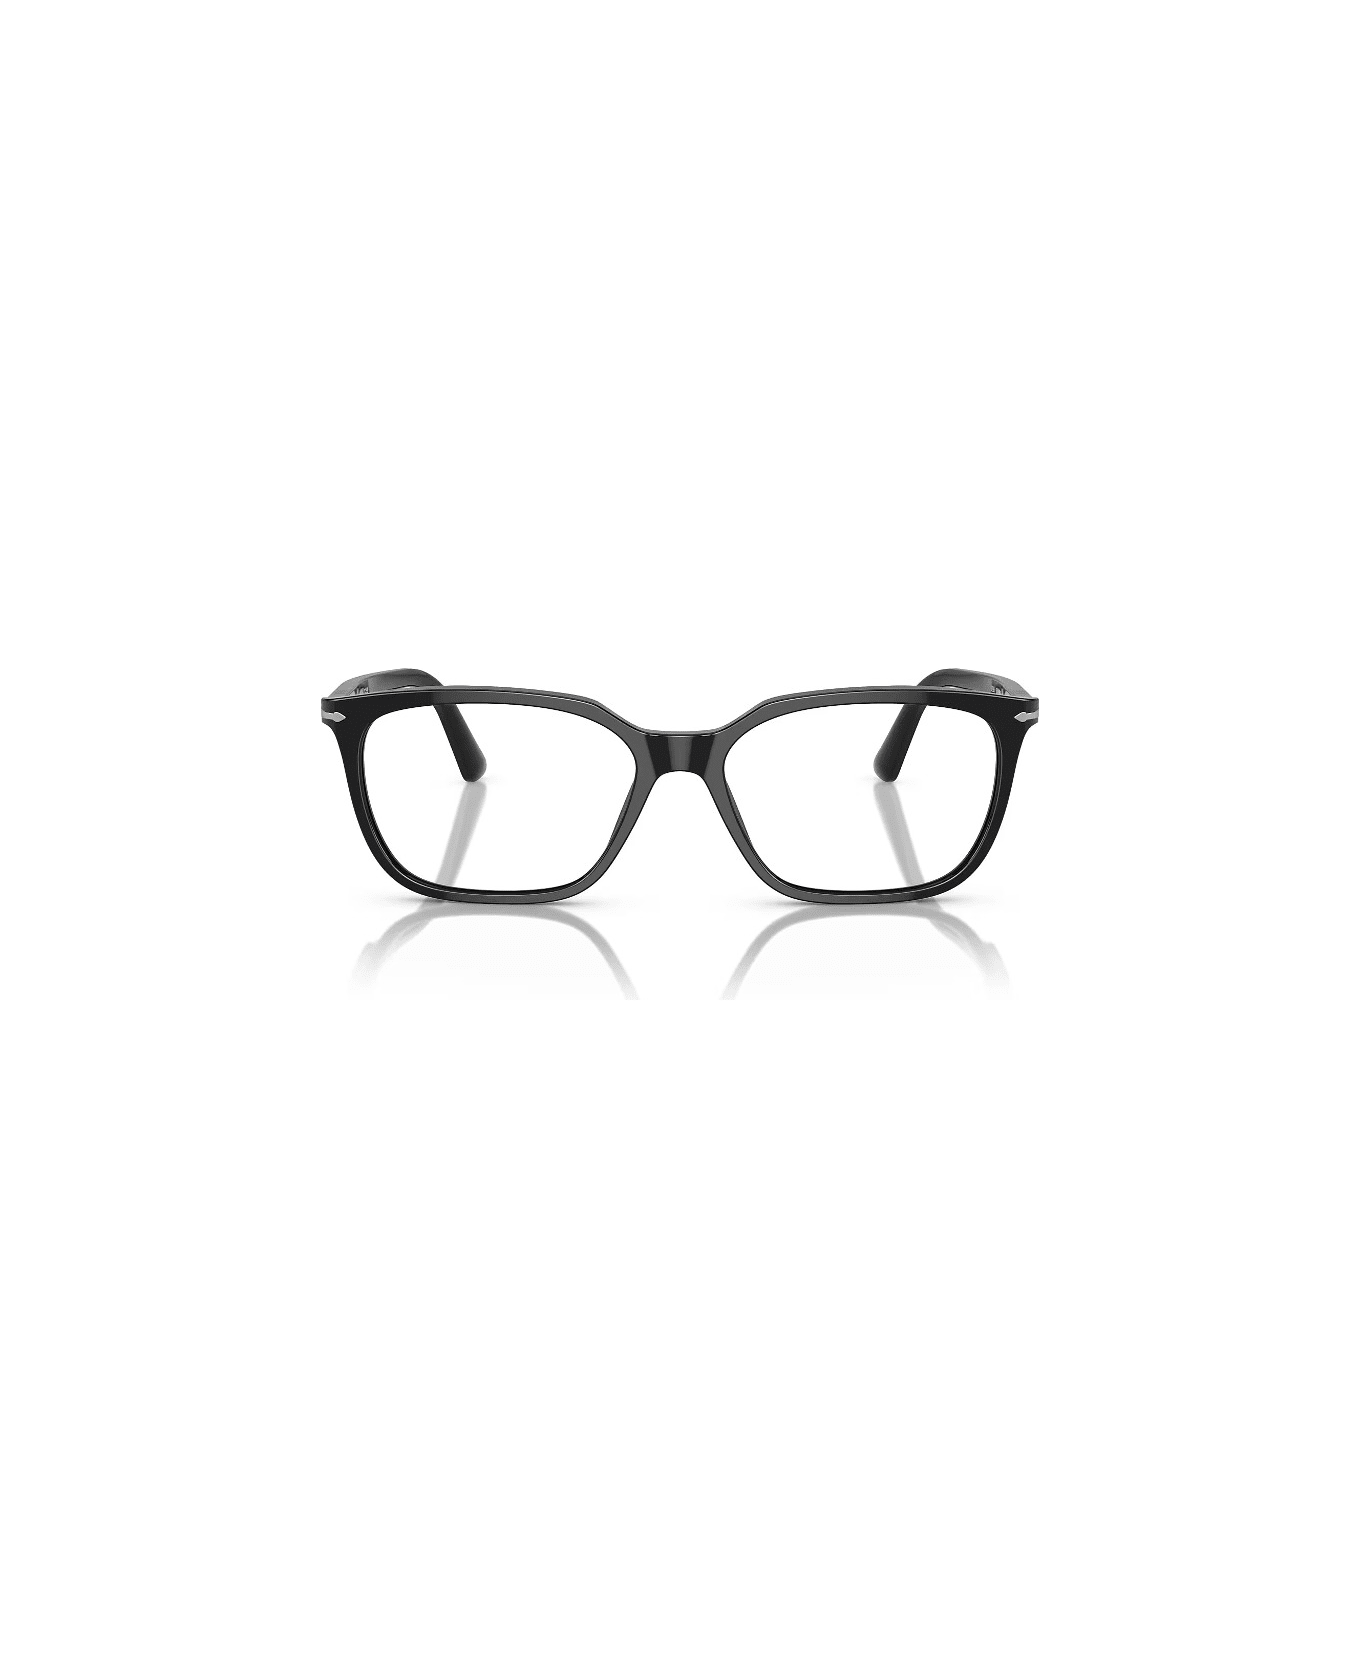 Persol PO3098 95 Glasses - Nero アイウェア